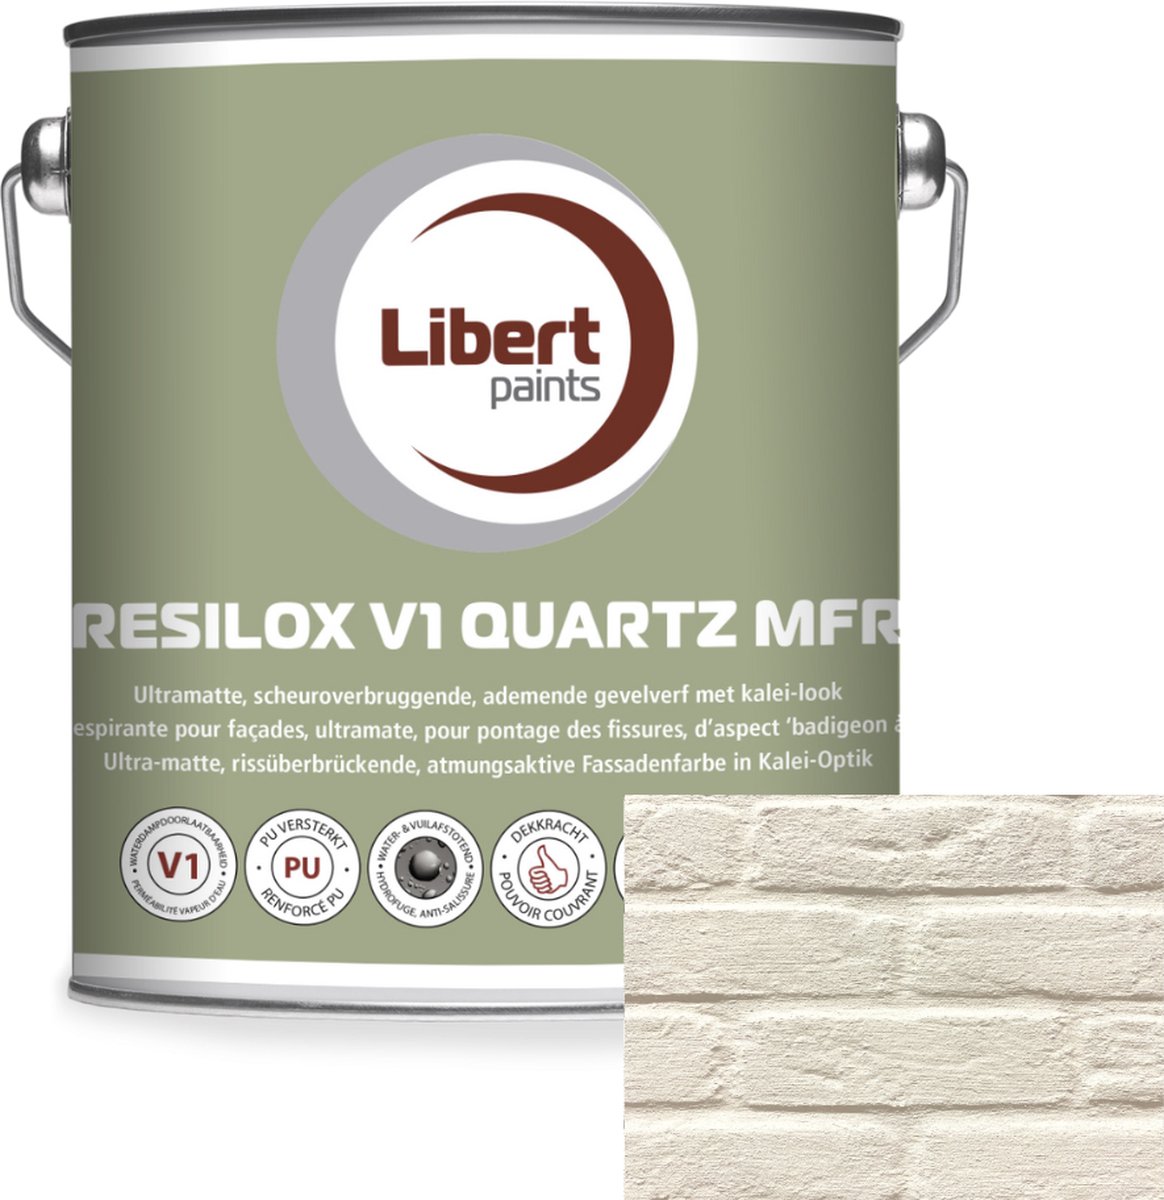 Kalei Verf - Kleur 003 - Libert Resilox V1 Quartz MFR 3.5kg